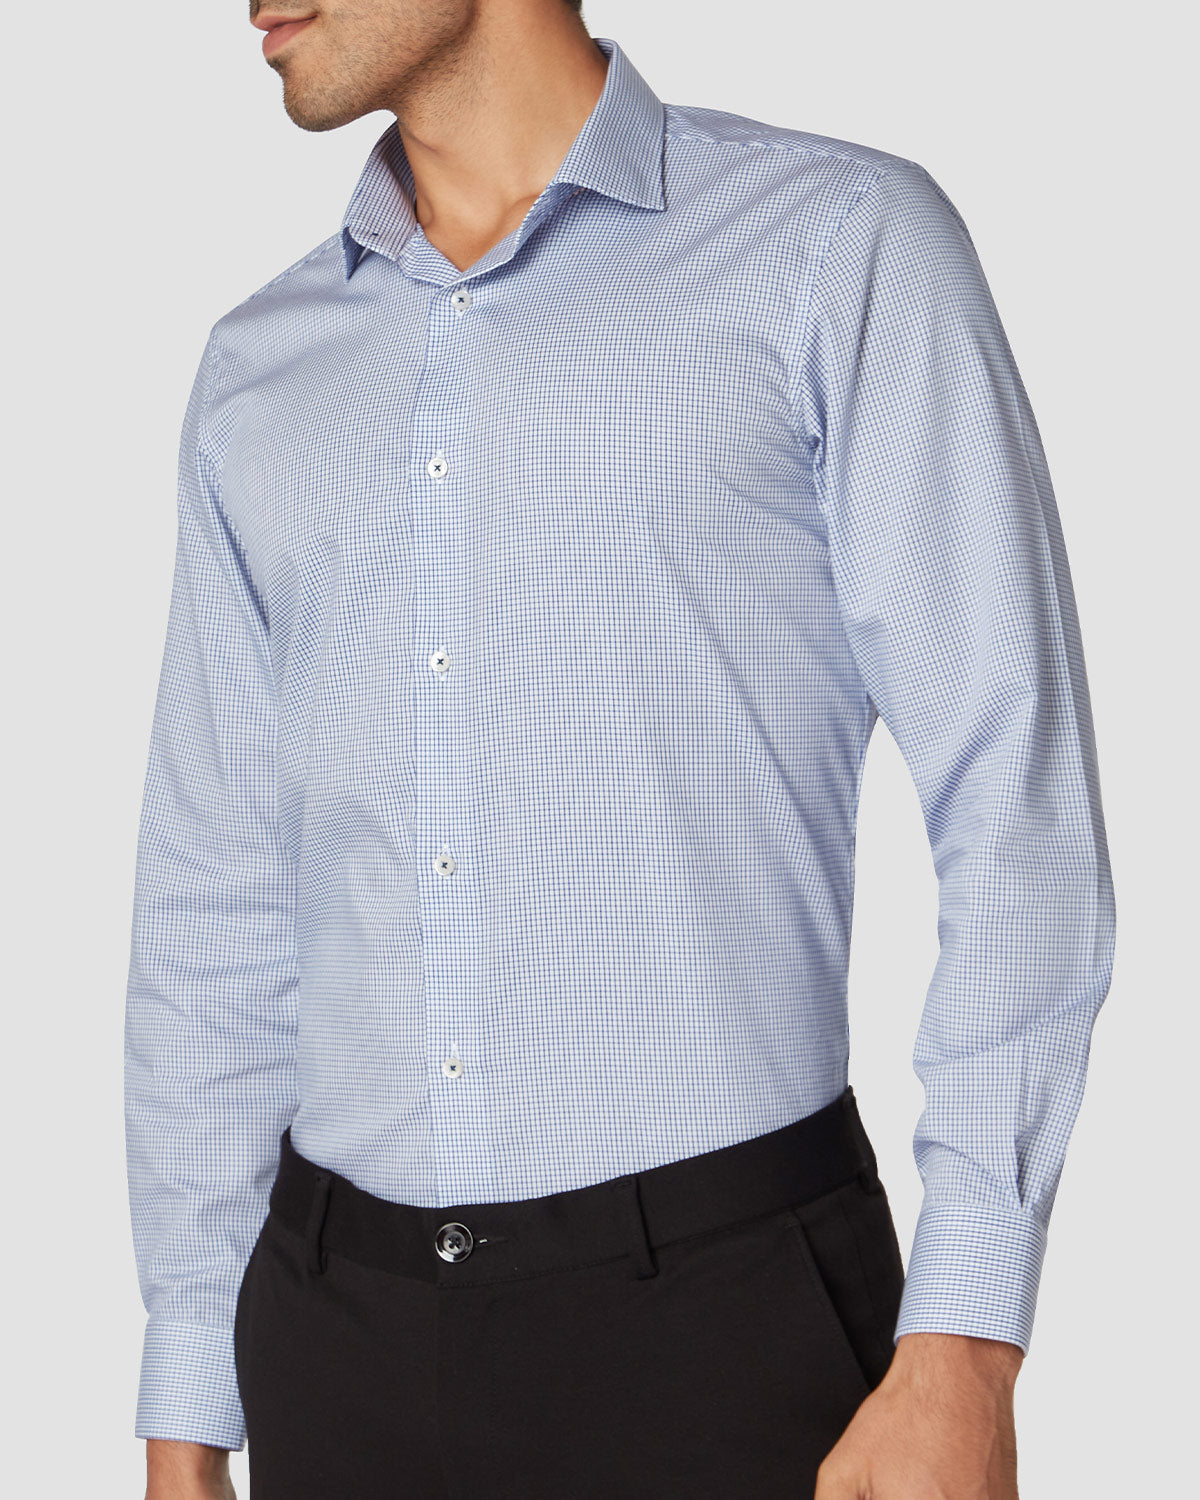 Bombay Shirt Company - Thomas Mason Blue Brook Wrinkle Resistant Shirt